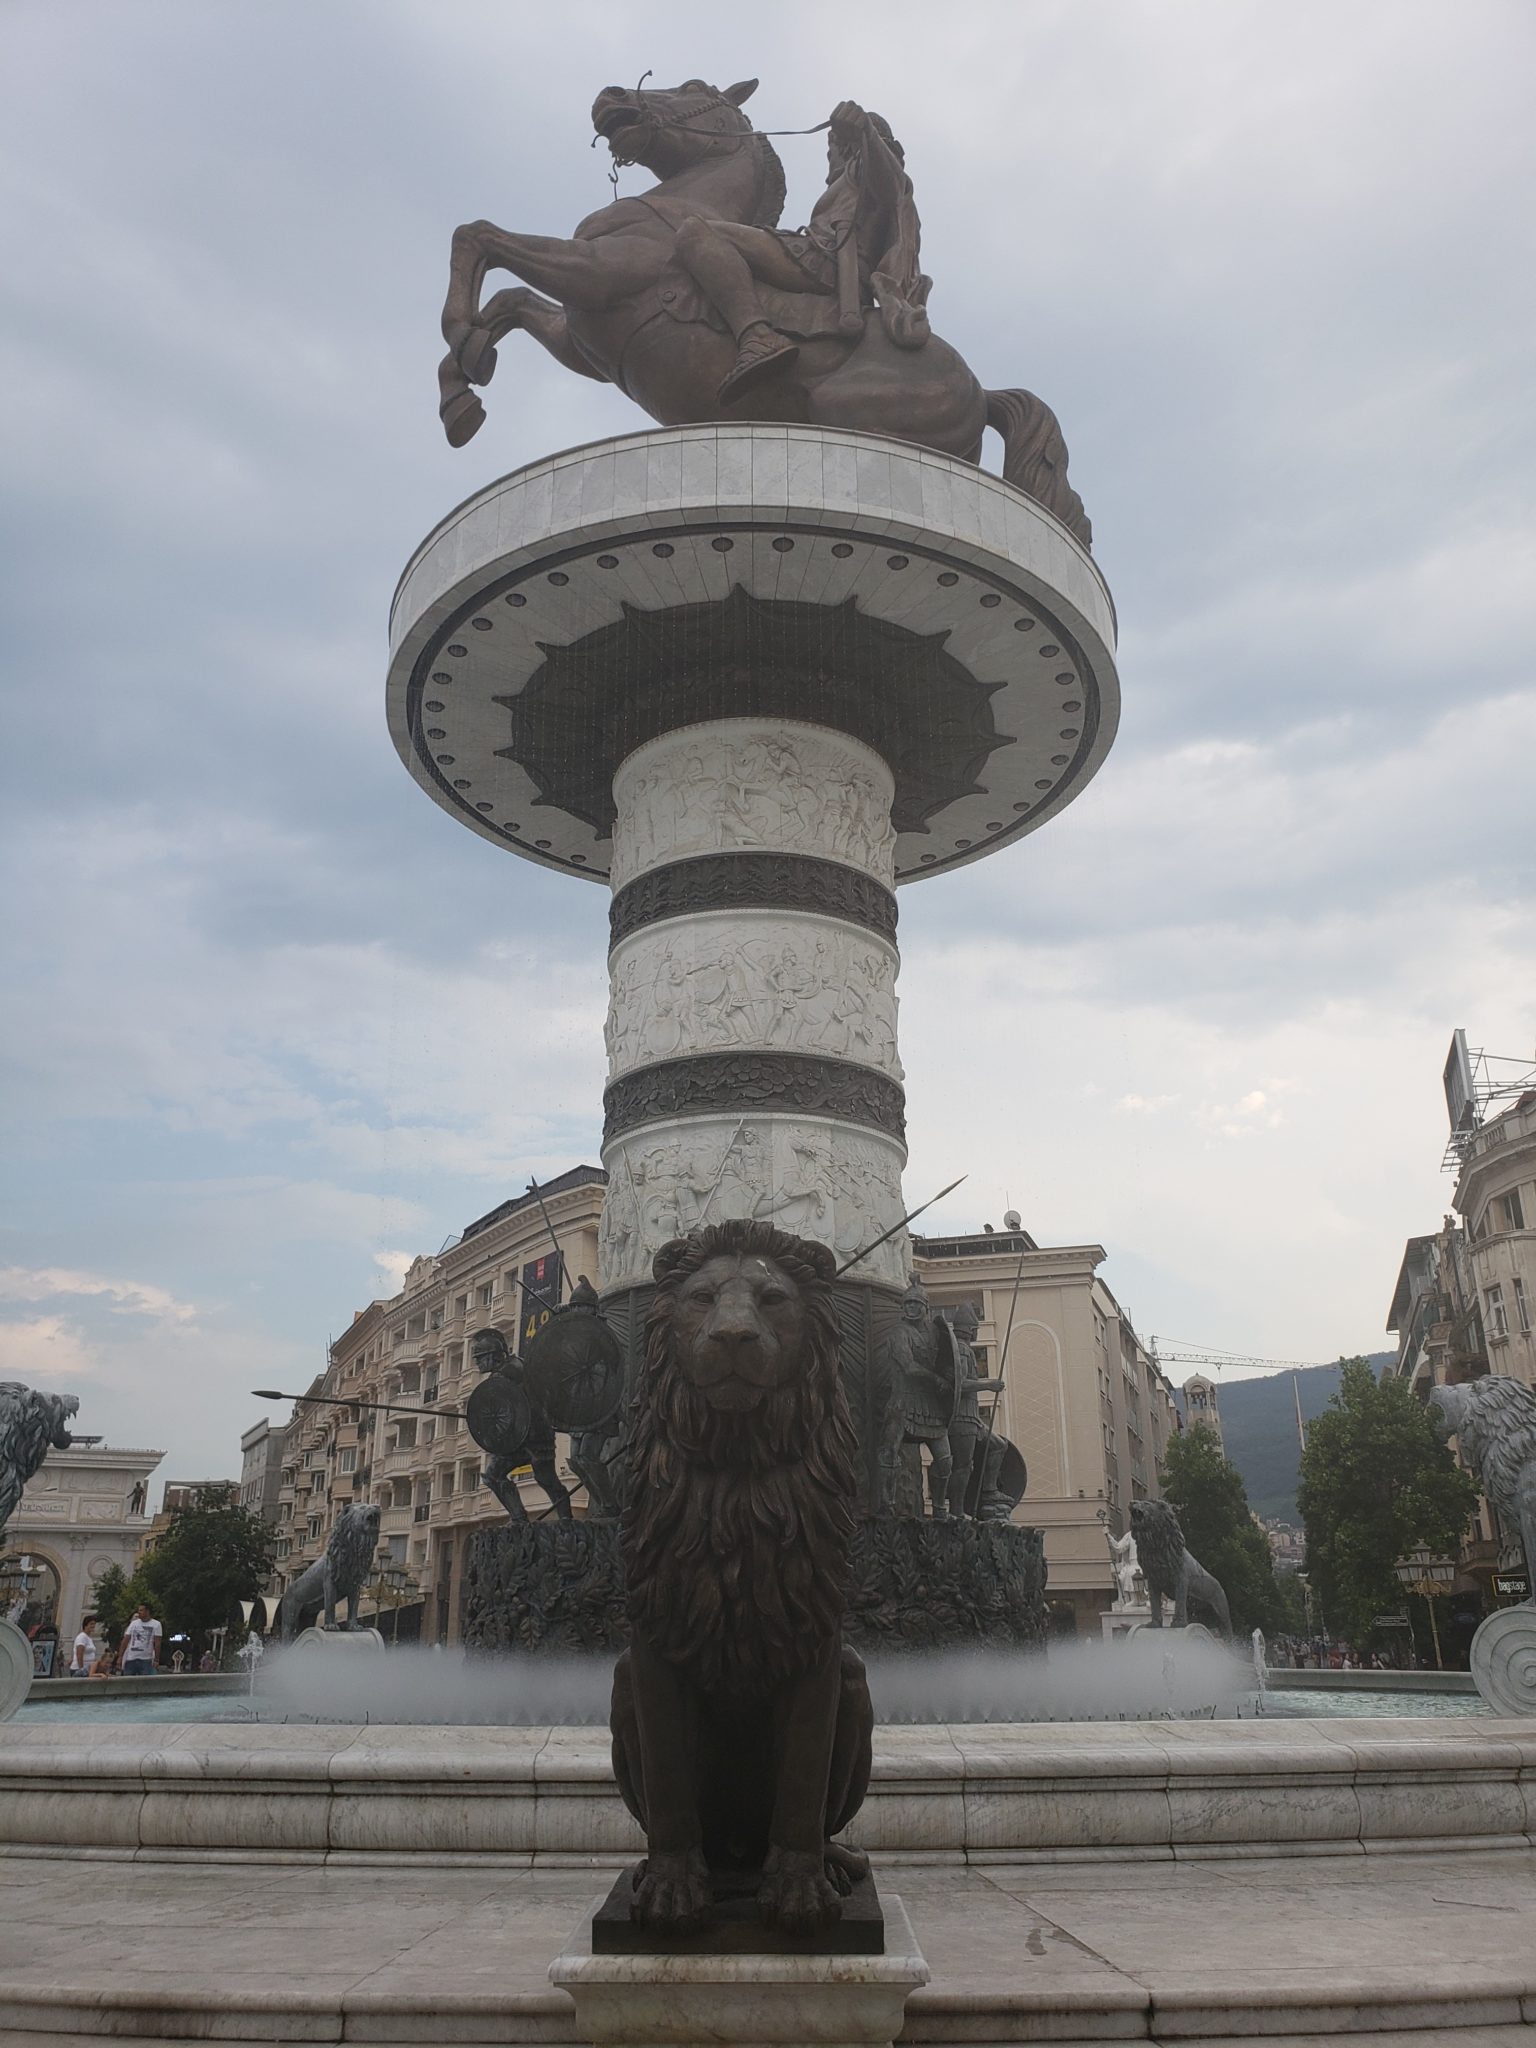 a statue of a man riding a horse on a pillar